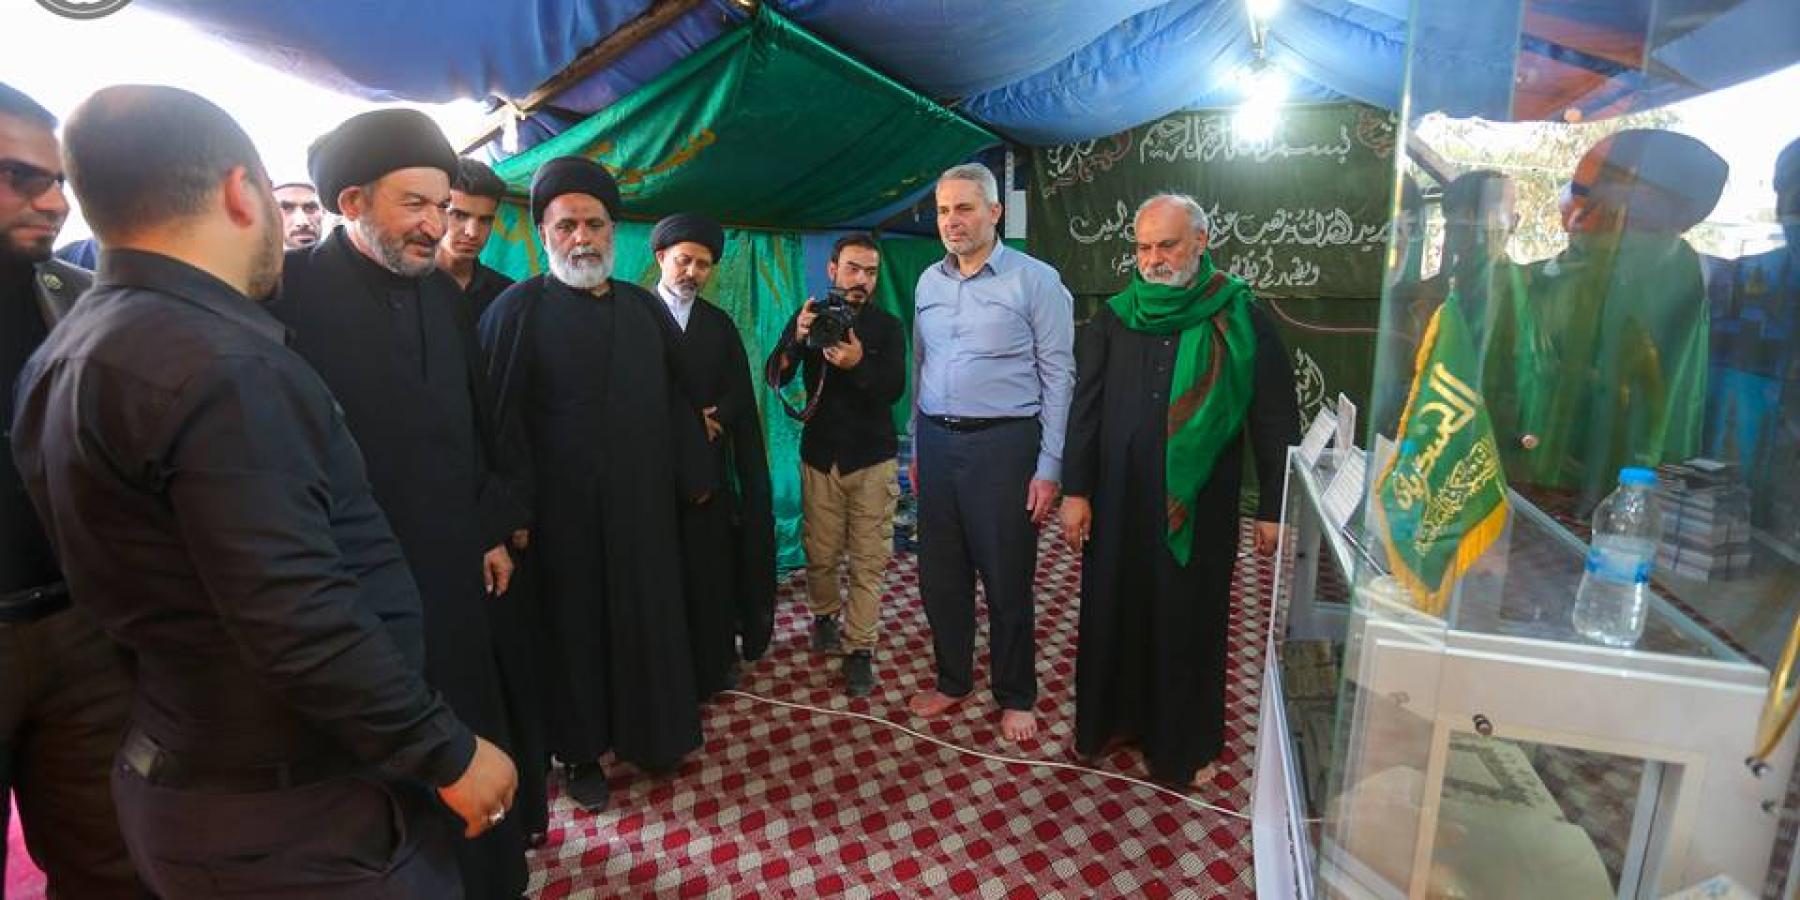 الأمين العام للعتبة العلوية المقدسة يزور معرض العتبة العسكرية المقدسة على طريق "يا حسين"